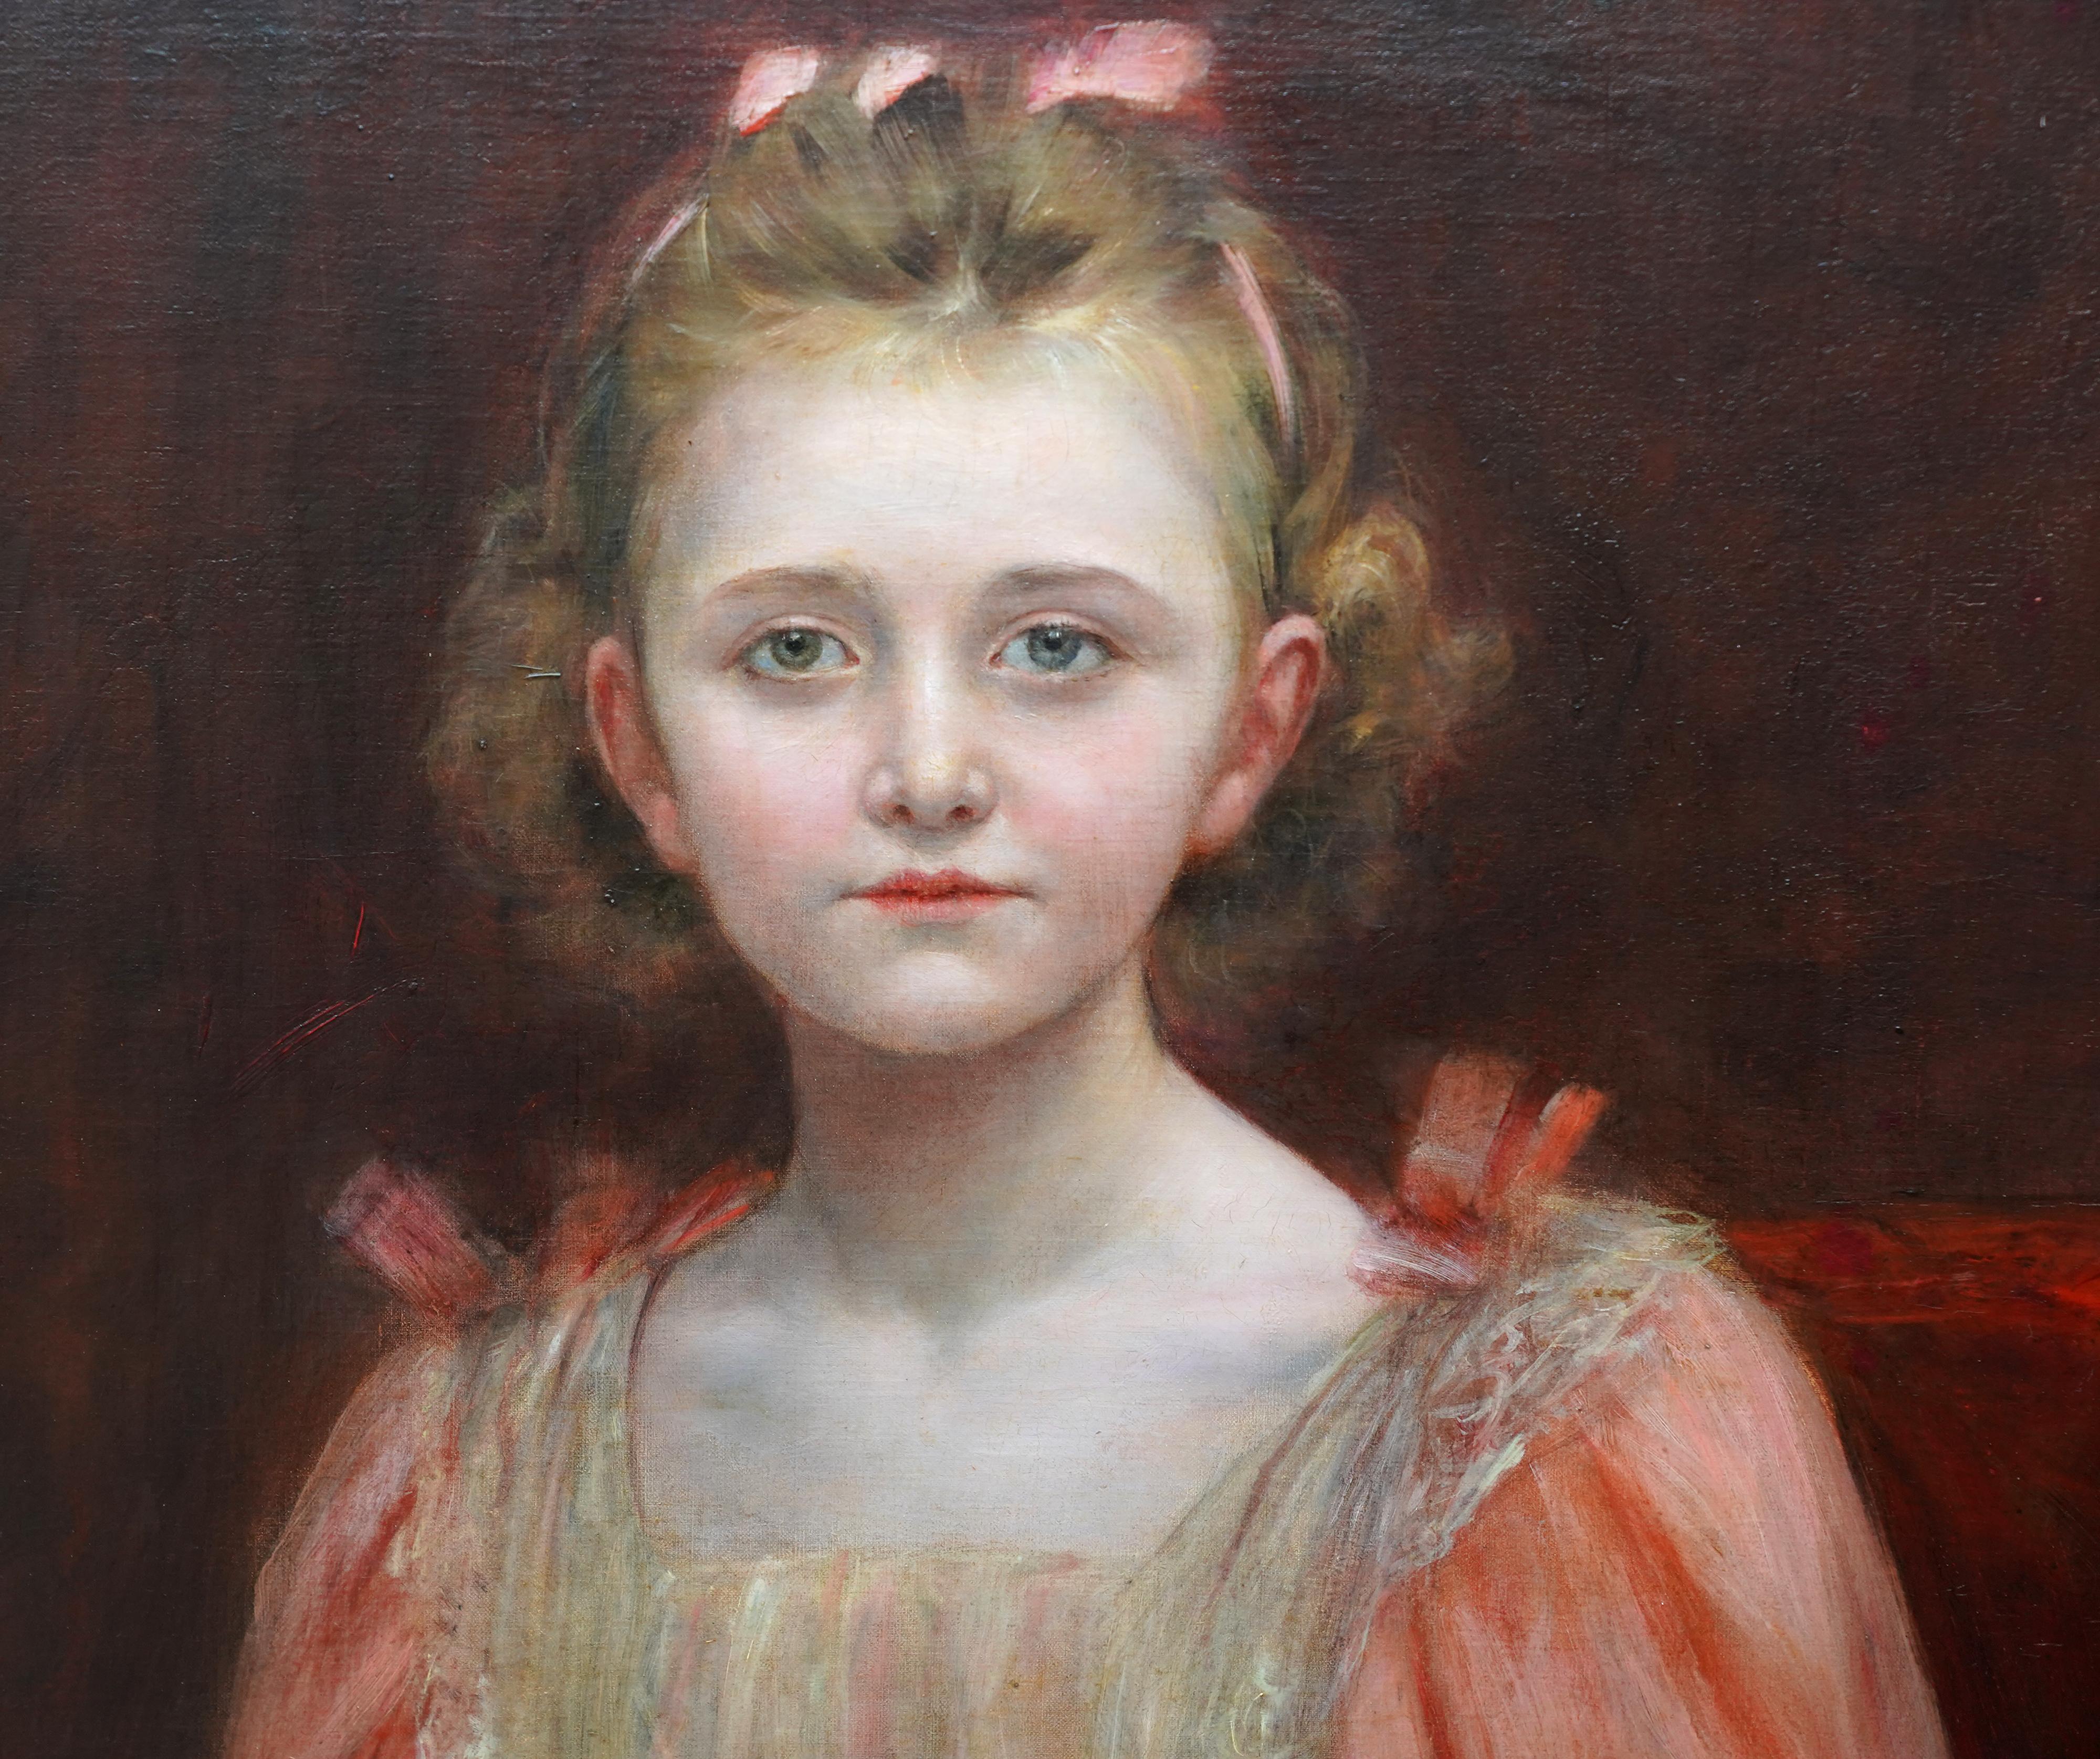 Dieses fesselnde Porträt-Ölgemälde stammt von dem bekannten Künstler Georges Van Den Bos. Es wurde um 1905 gemalt und zeigt ein halblanges Porträt eines jungen Mädchens in einem pfirsichfarbenen Kleid mit Spitzenmieder und passenden Schleifen im